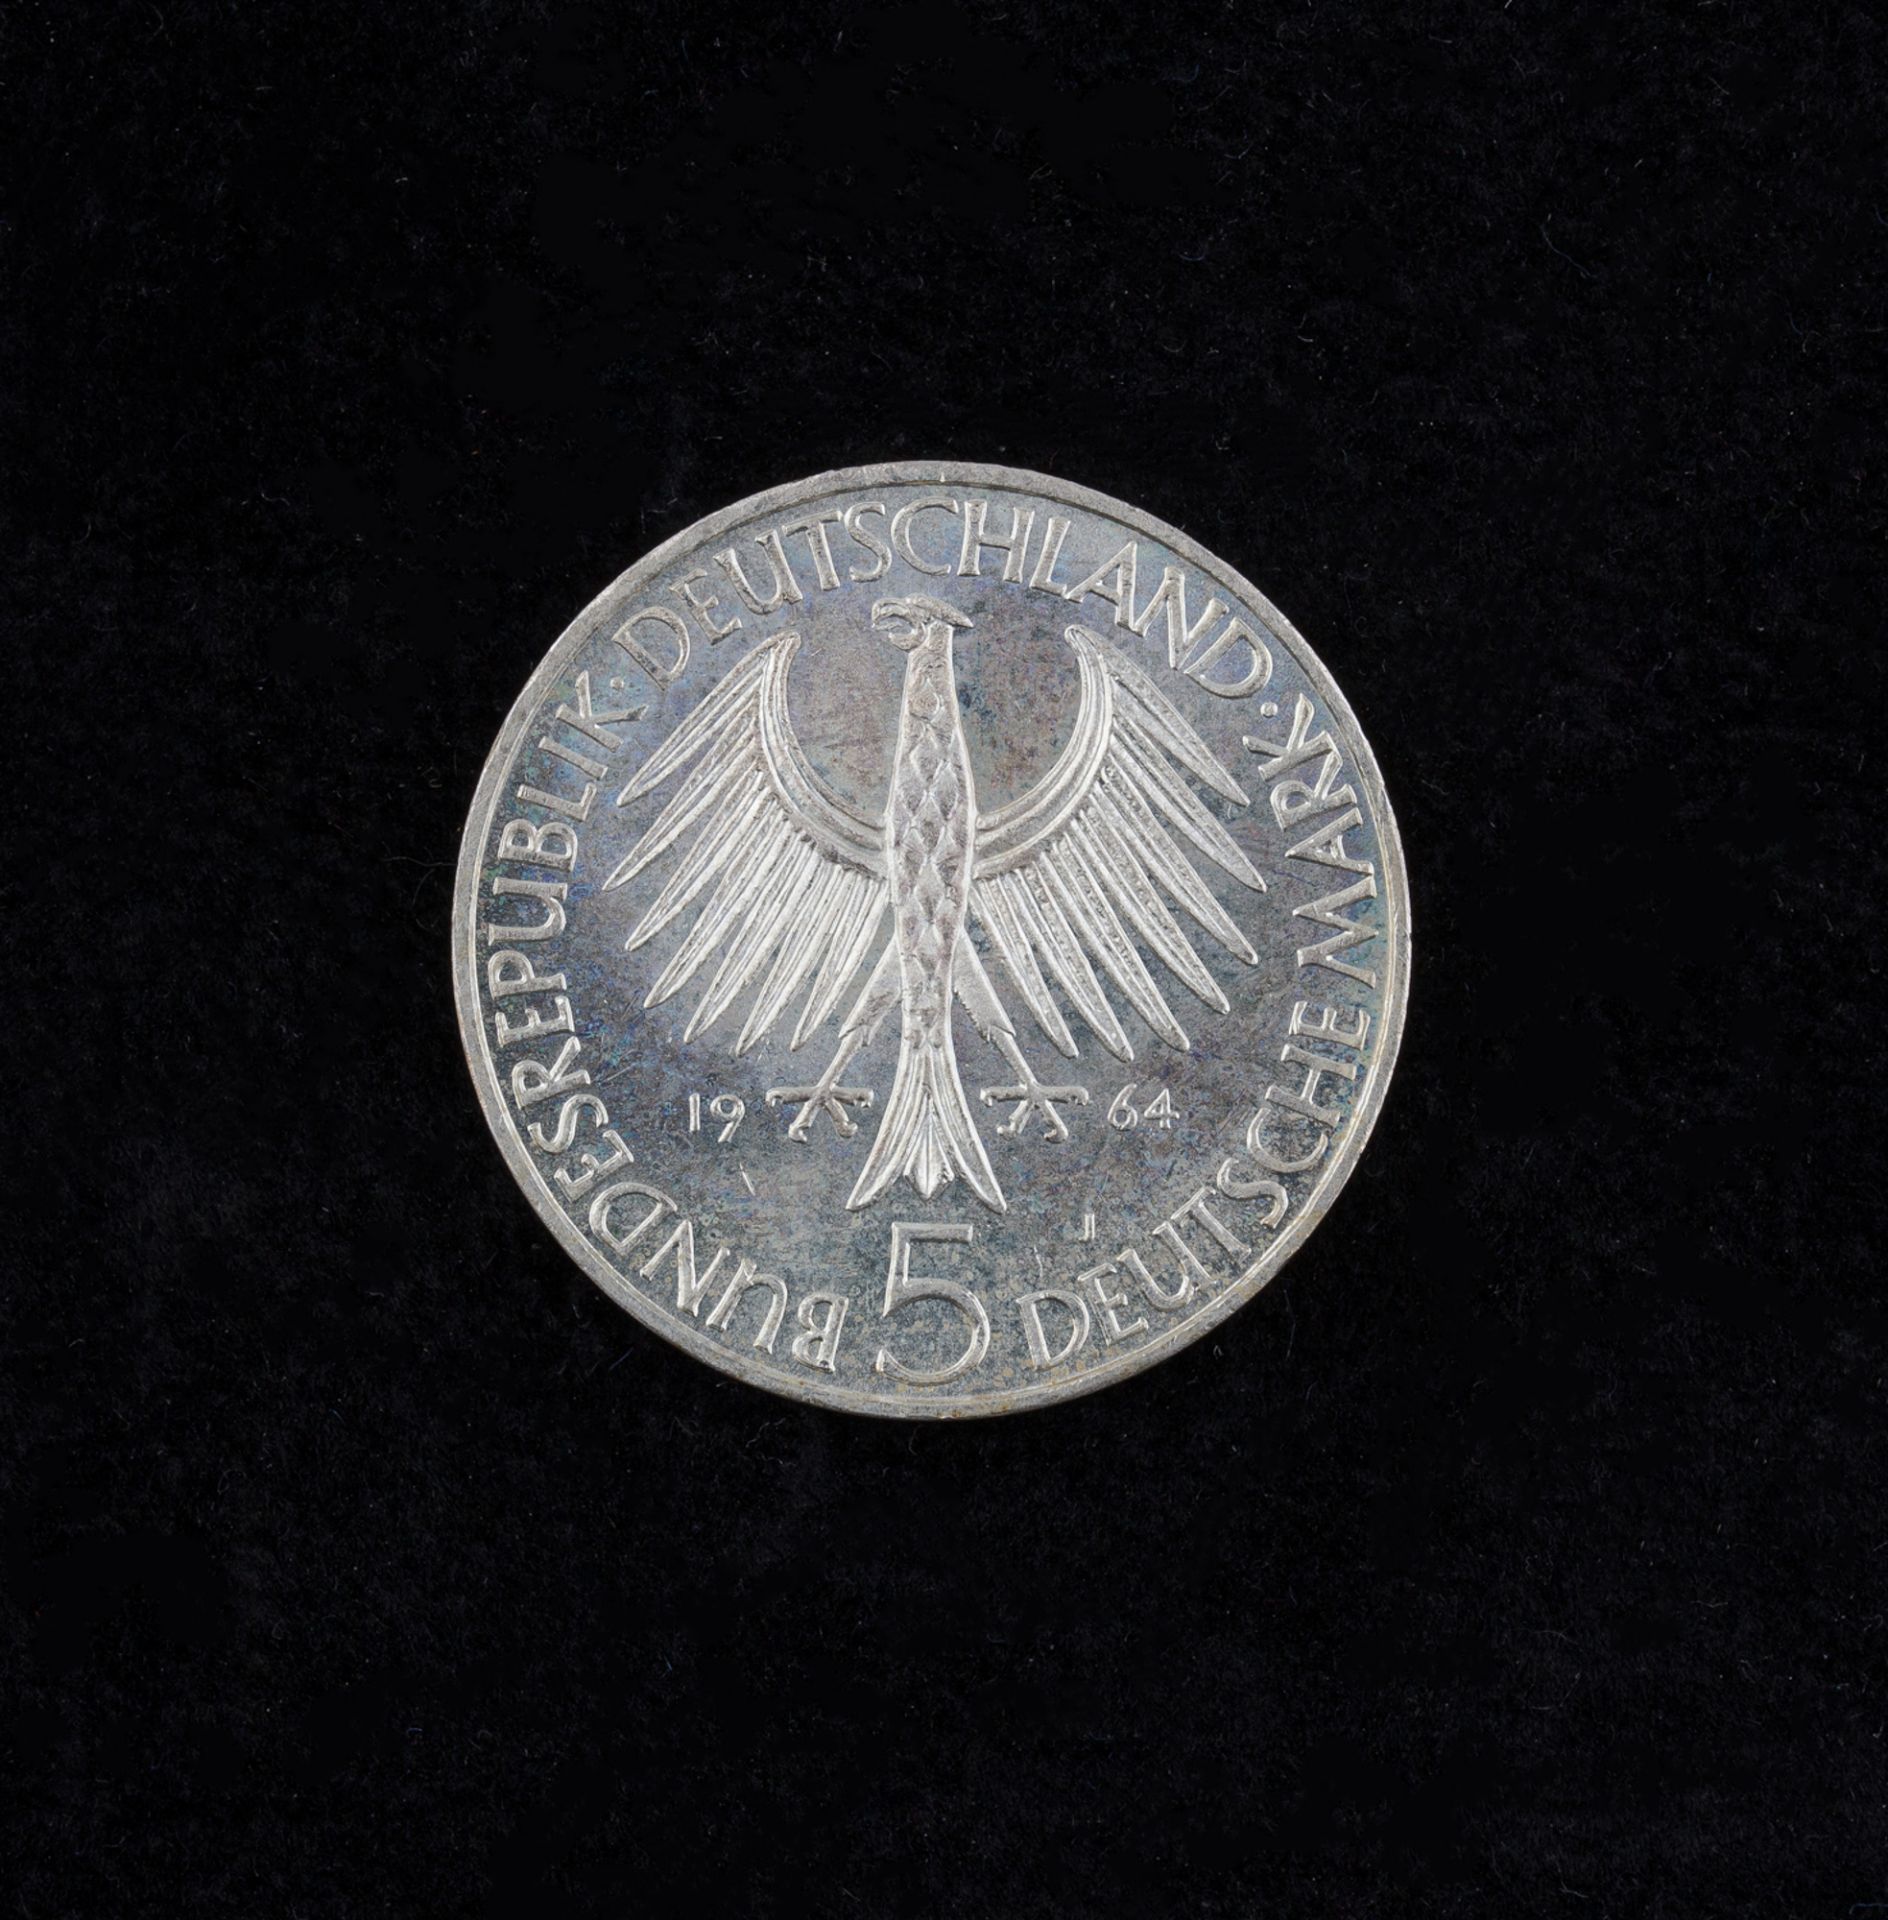 5 Deutsche Mark, 1964 J, Johann Gottlieb Fichte